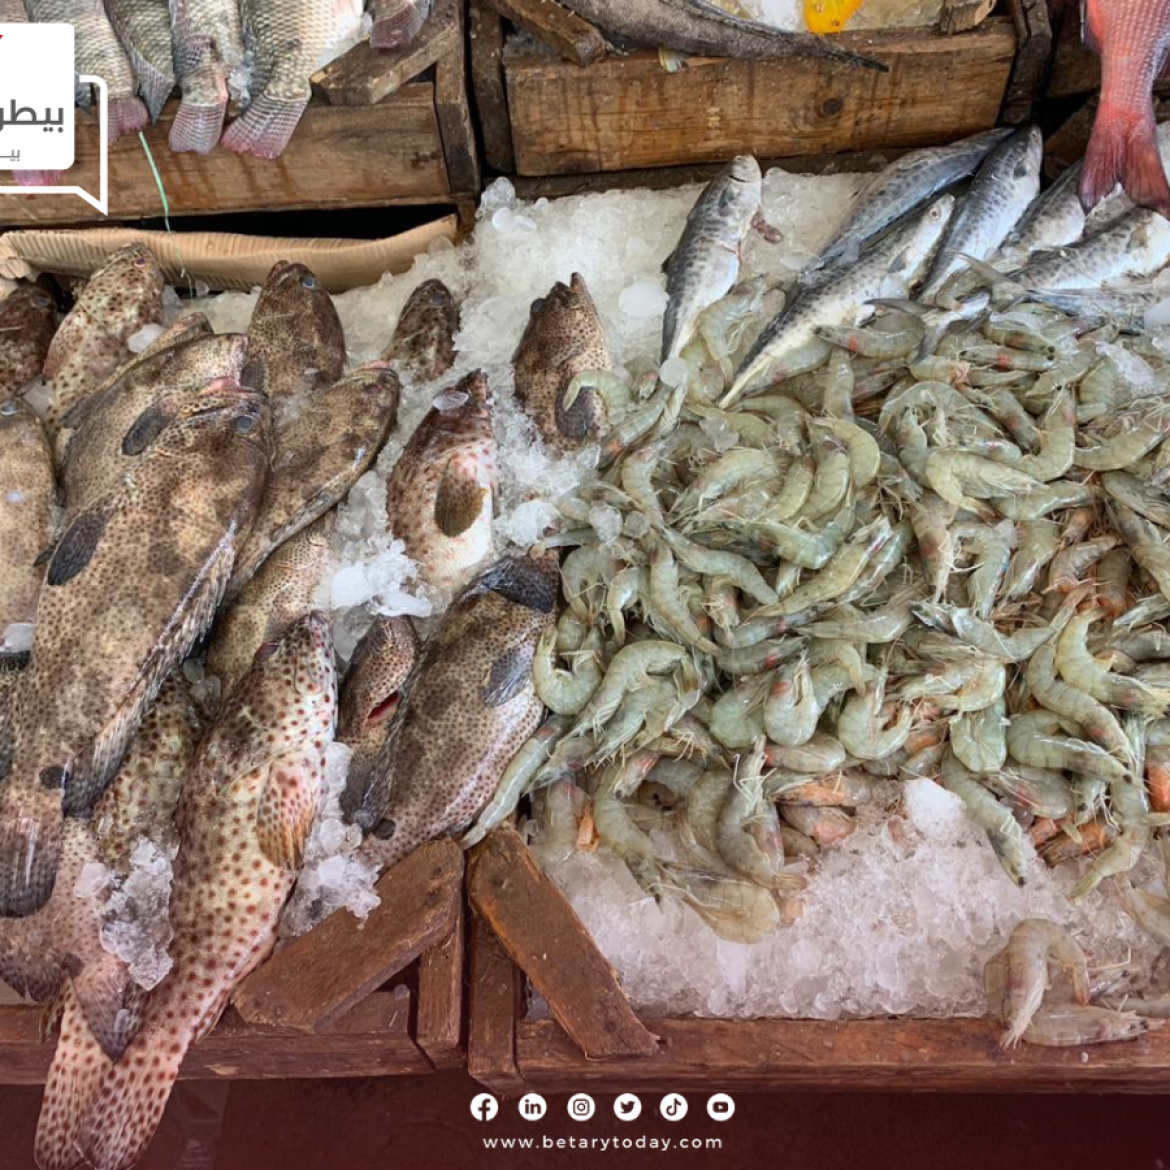 هدوء أسعار الأسماك والمأكولات البحرية اليوم الاثنين 24 يونيو في سوق العبور